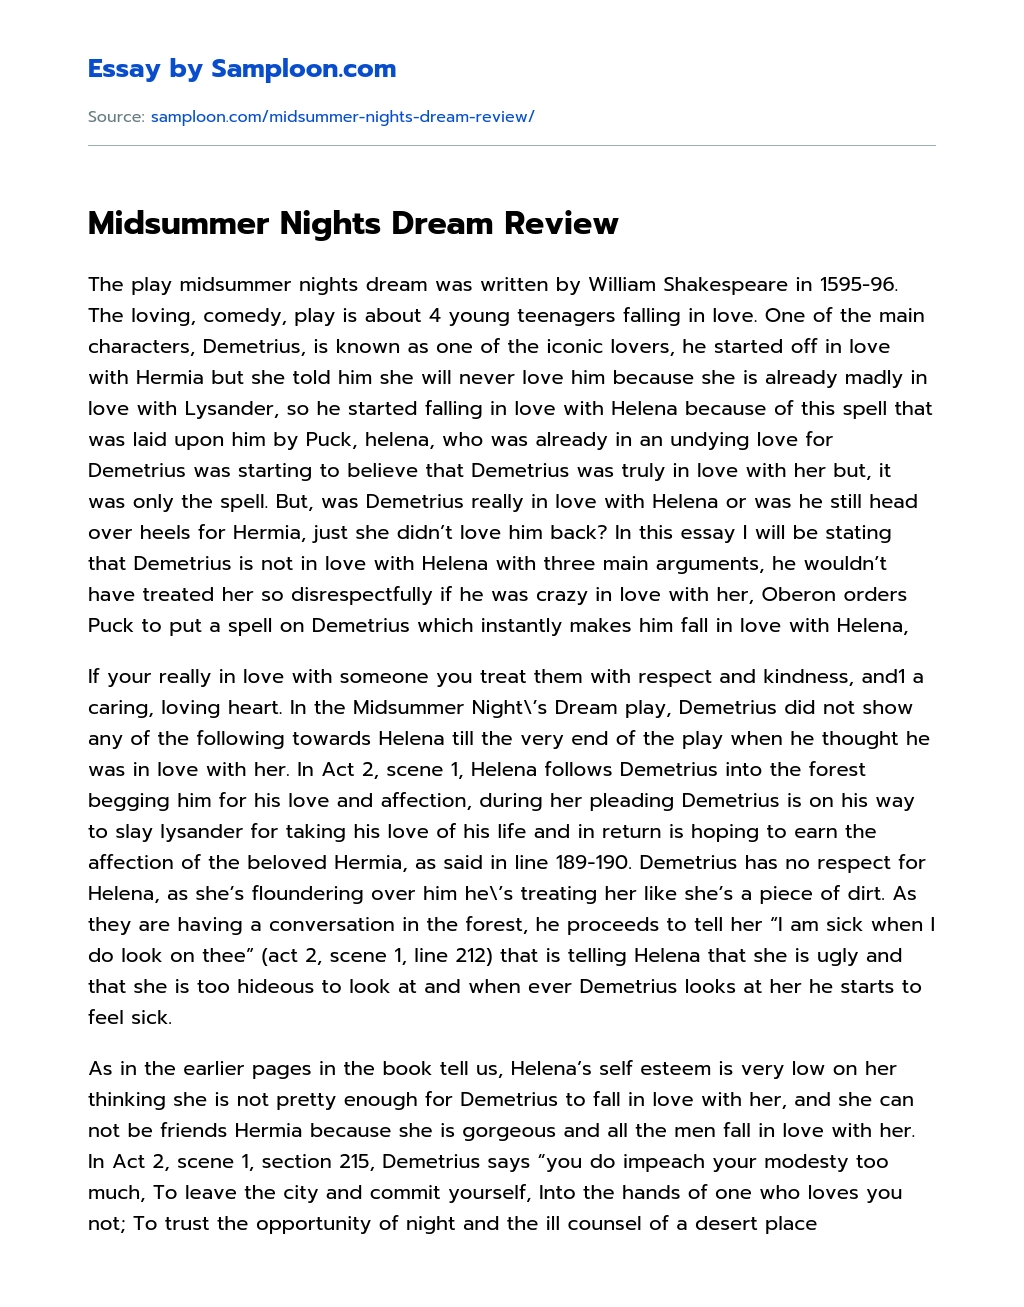 Midsummer Nights Dream Review essay